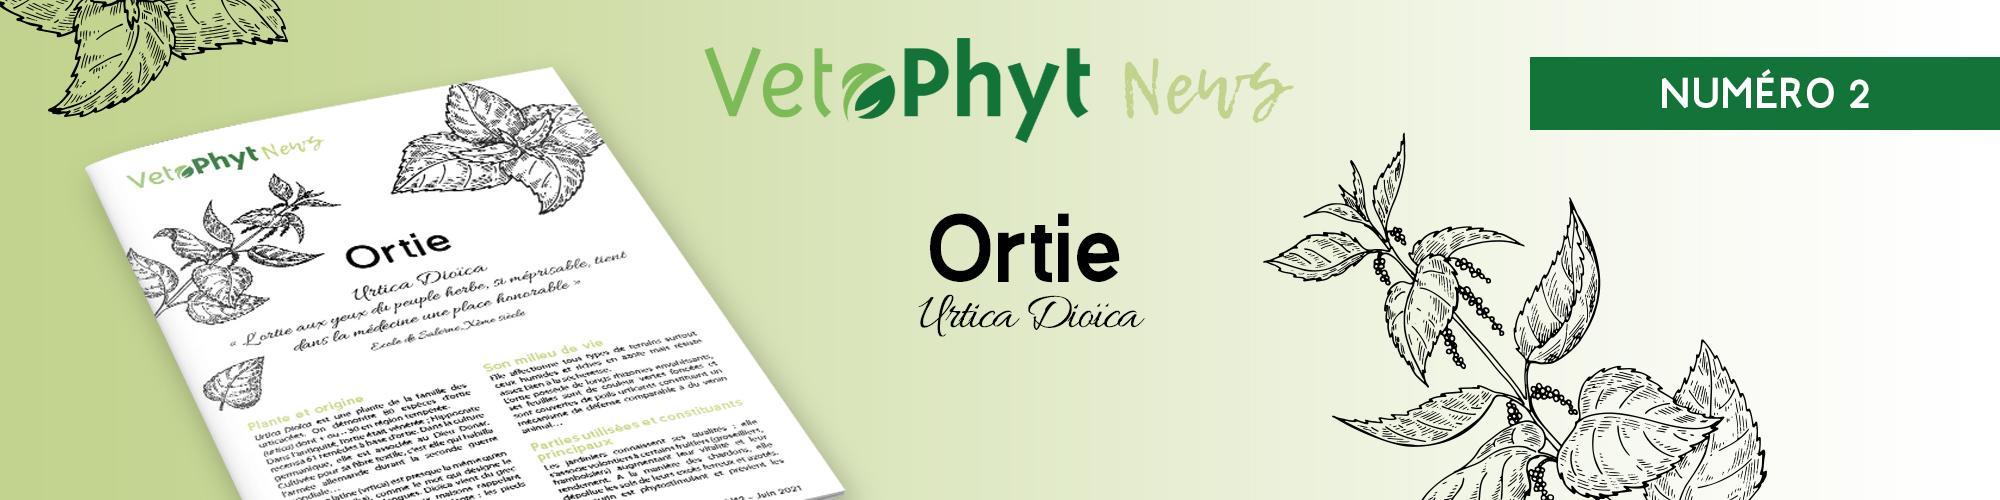 VetoPhyt News Ortie